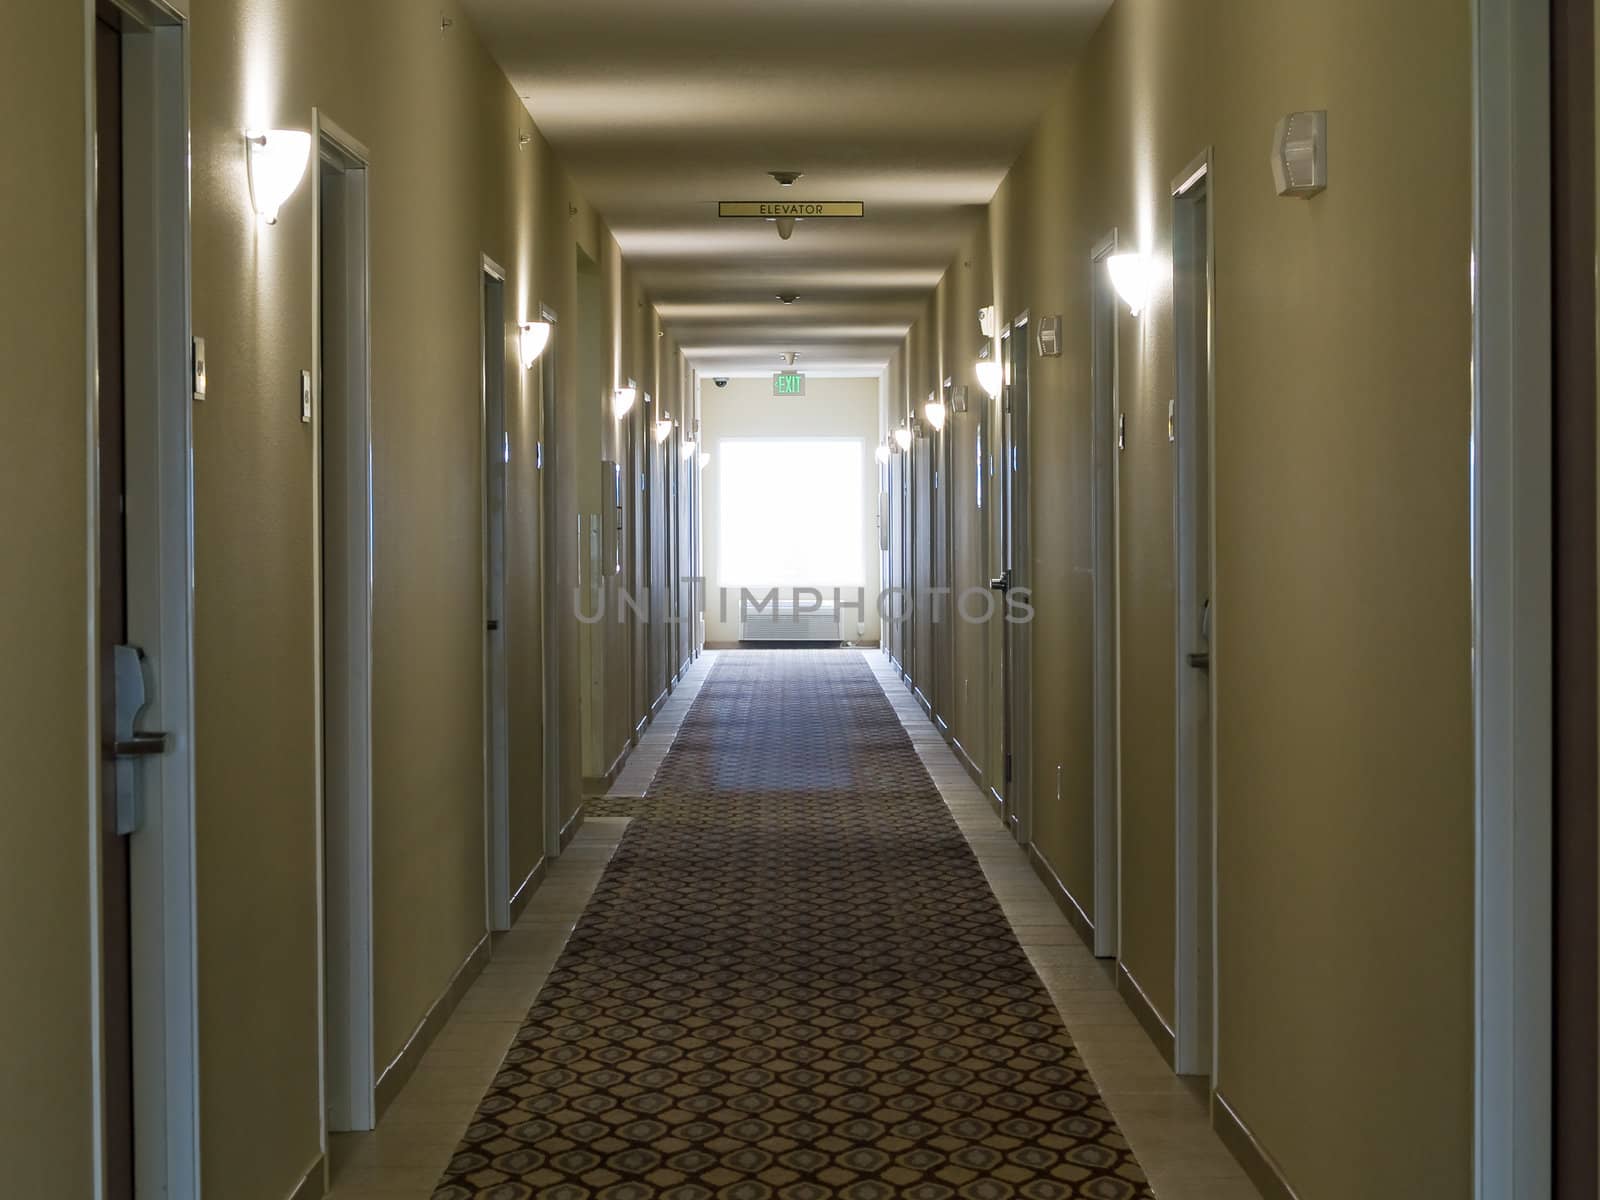 Empty hotel corridor in monochrome sepia color tone